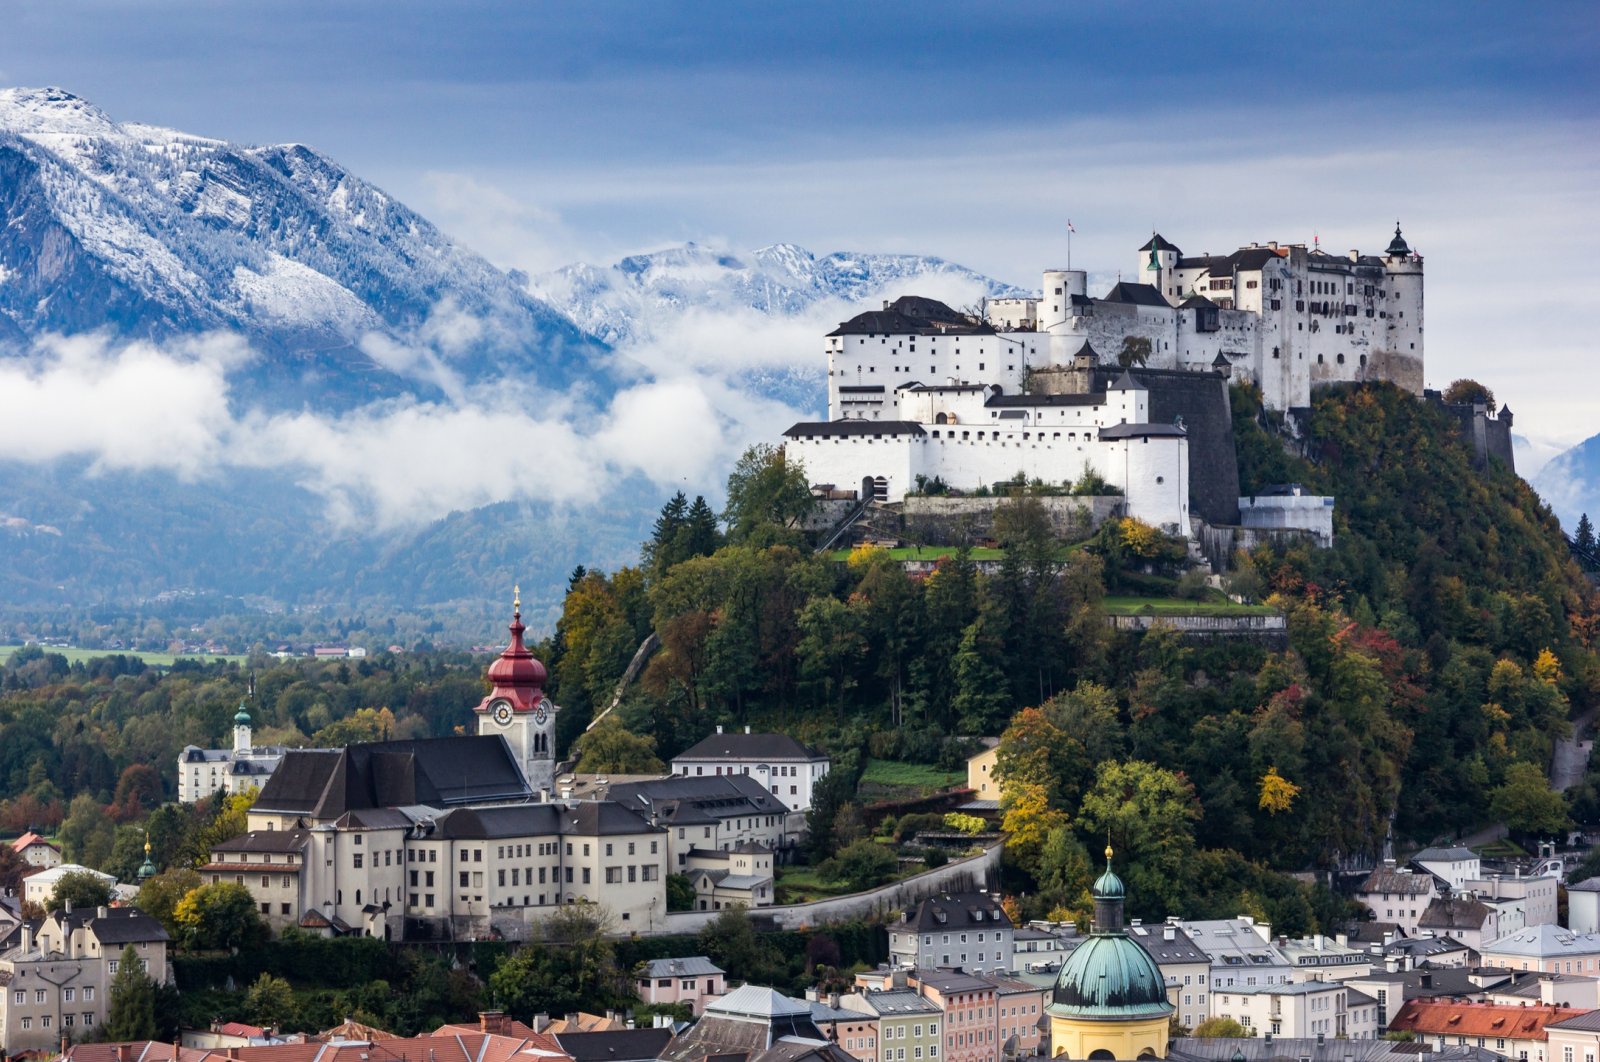 Salzburg, tempat kelahiran Mozart, memesona semua dengan sejarah yang mempesona